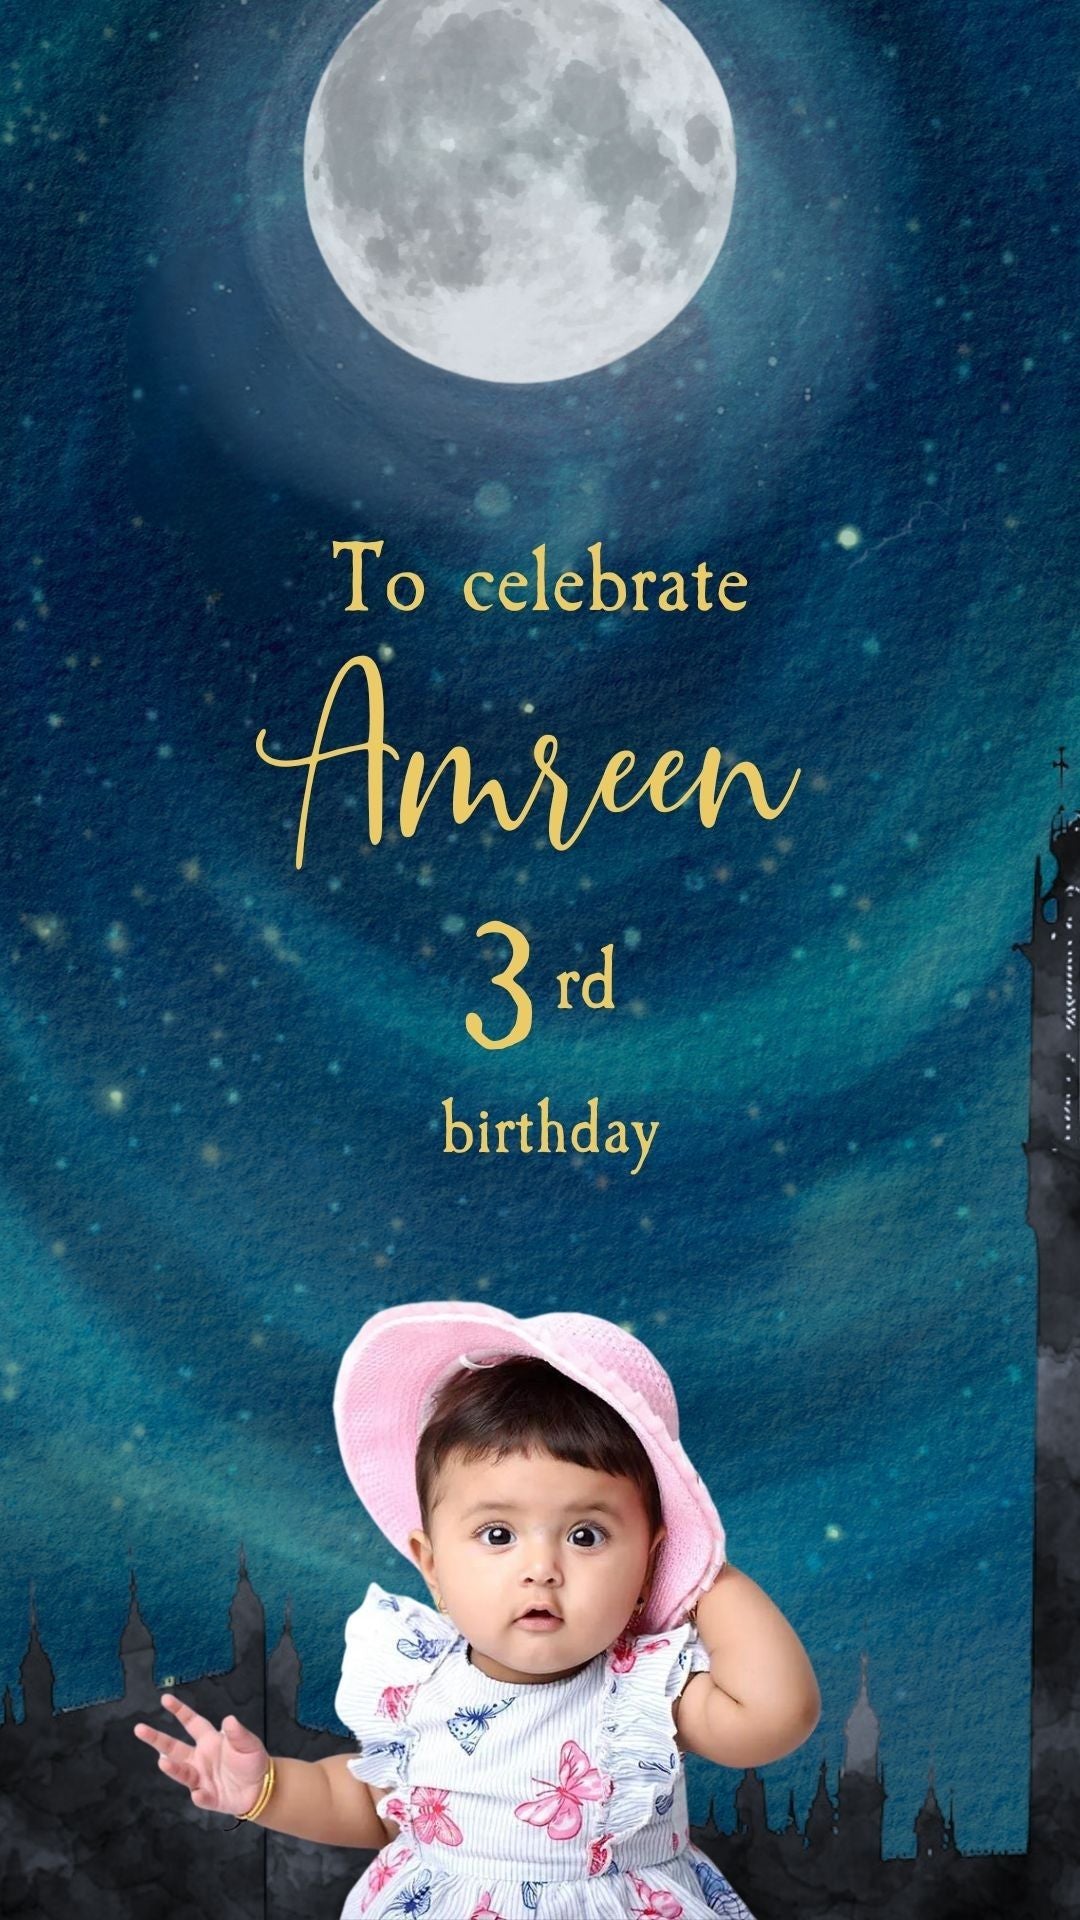 Invitación en vídeo del cumpleaños de Tinkerbell - Invitación a la fiesta de cumpleaños digital con tema de Tinkerbell 